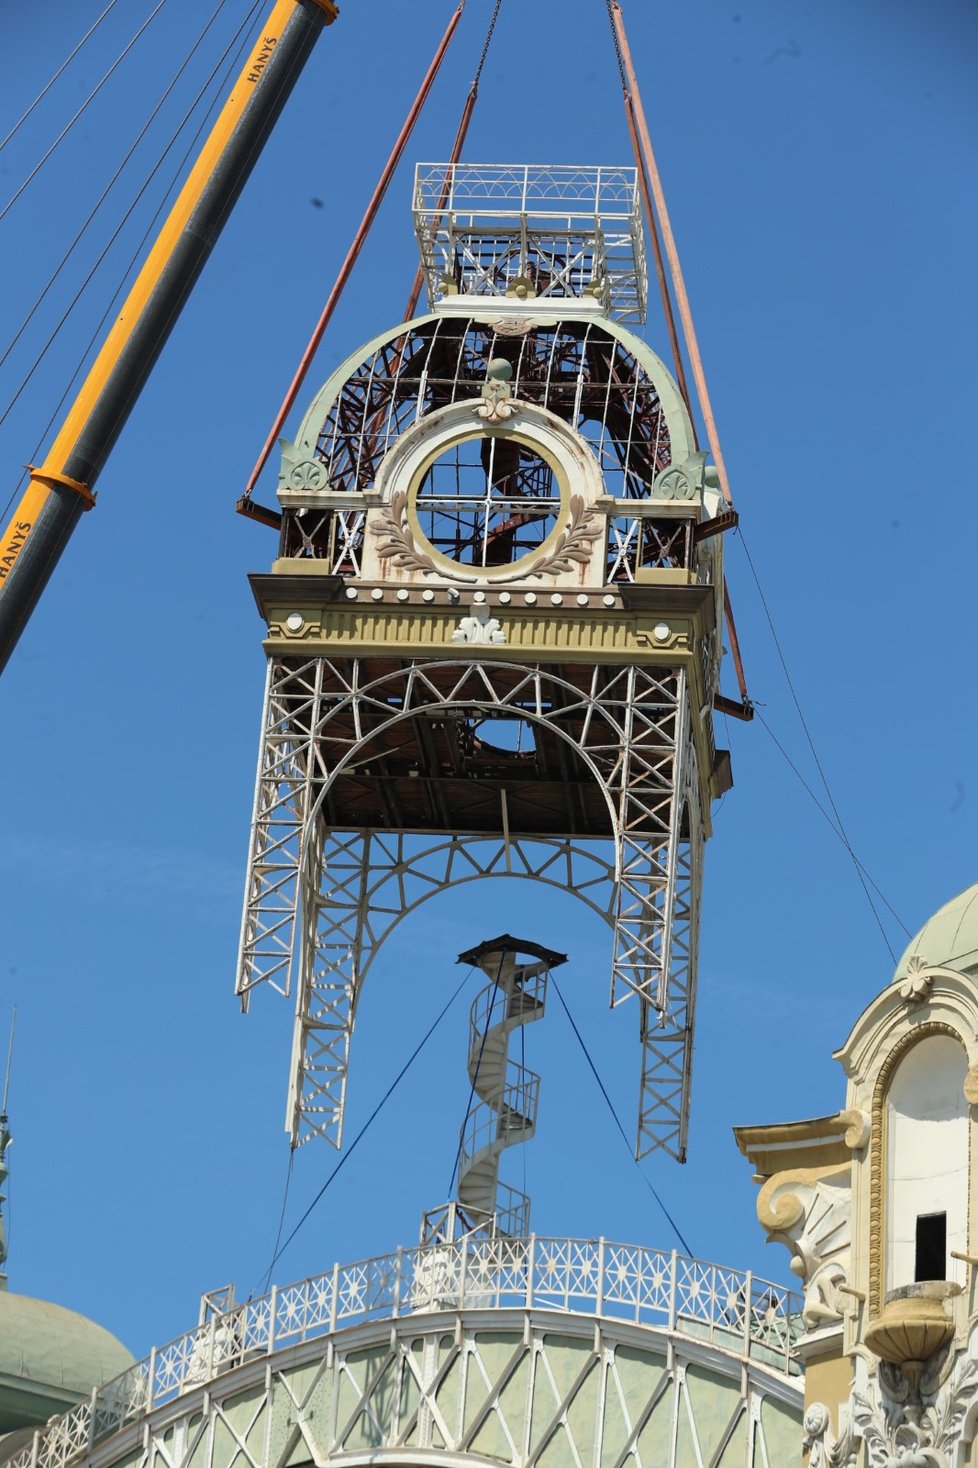 Sundávání hodinové věže z Průmyslového paláce. (22. června 2022)